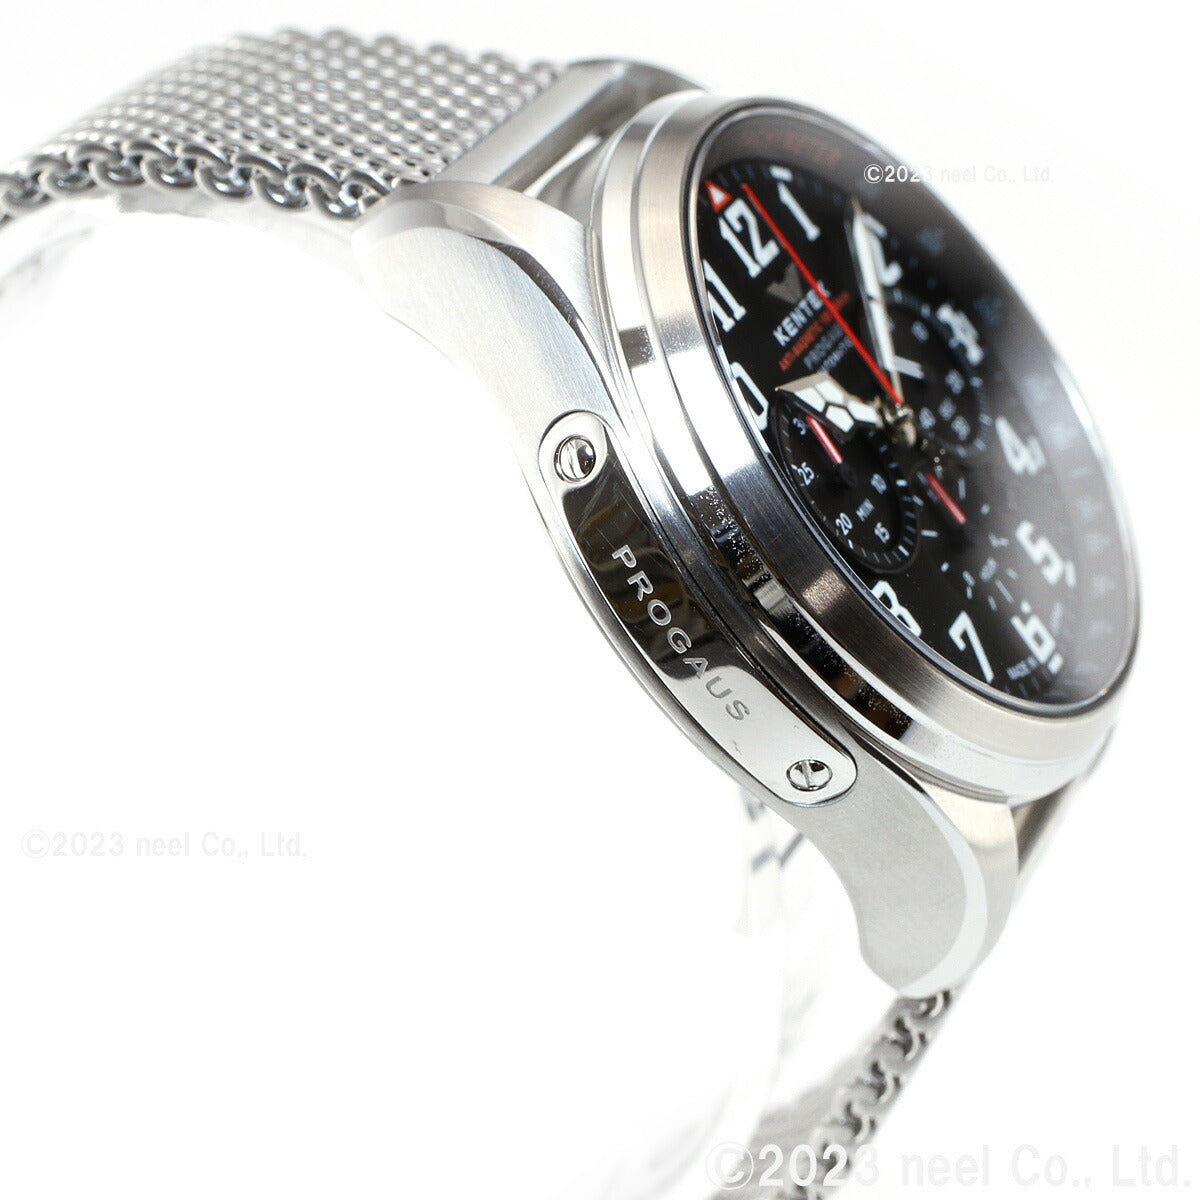 ケンテックス KENTEX 腕時計 時計 メンズ 耐磁時計 自動巻き クロノグラフ プロガウス 日本製 S769X-9